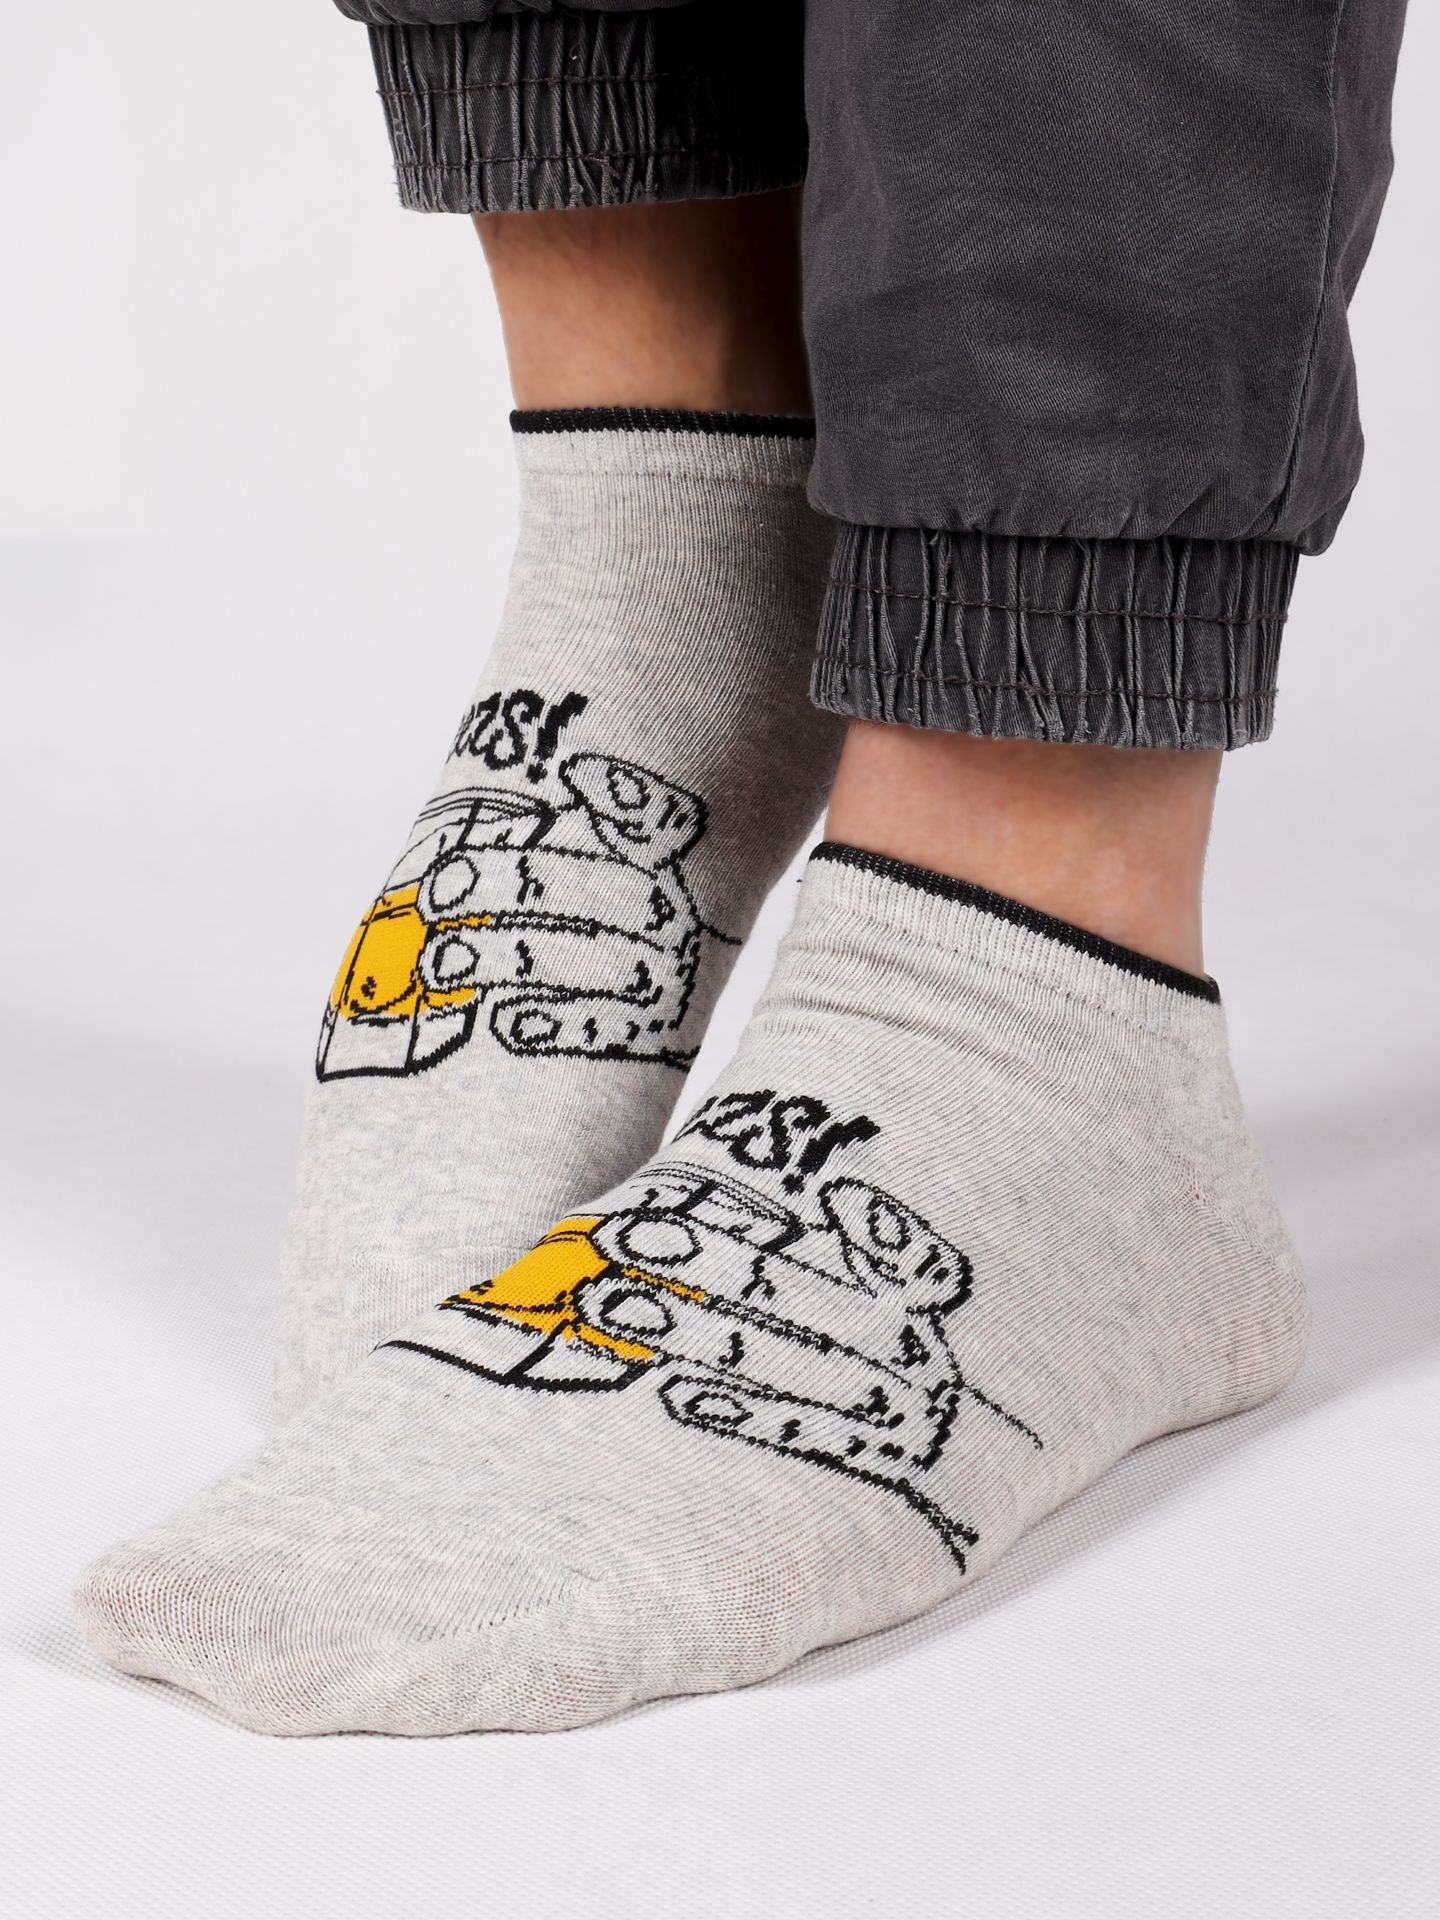 Levně Yoclub Man's Ankle Funny Cotton Socks Pattern 2 Colours